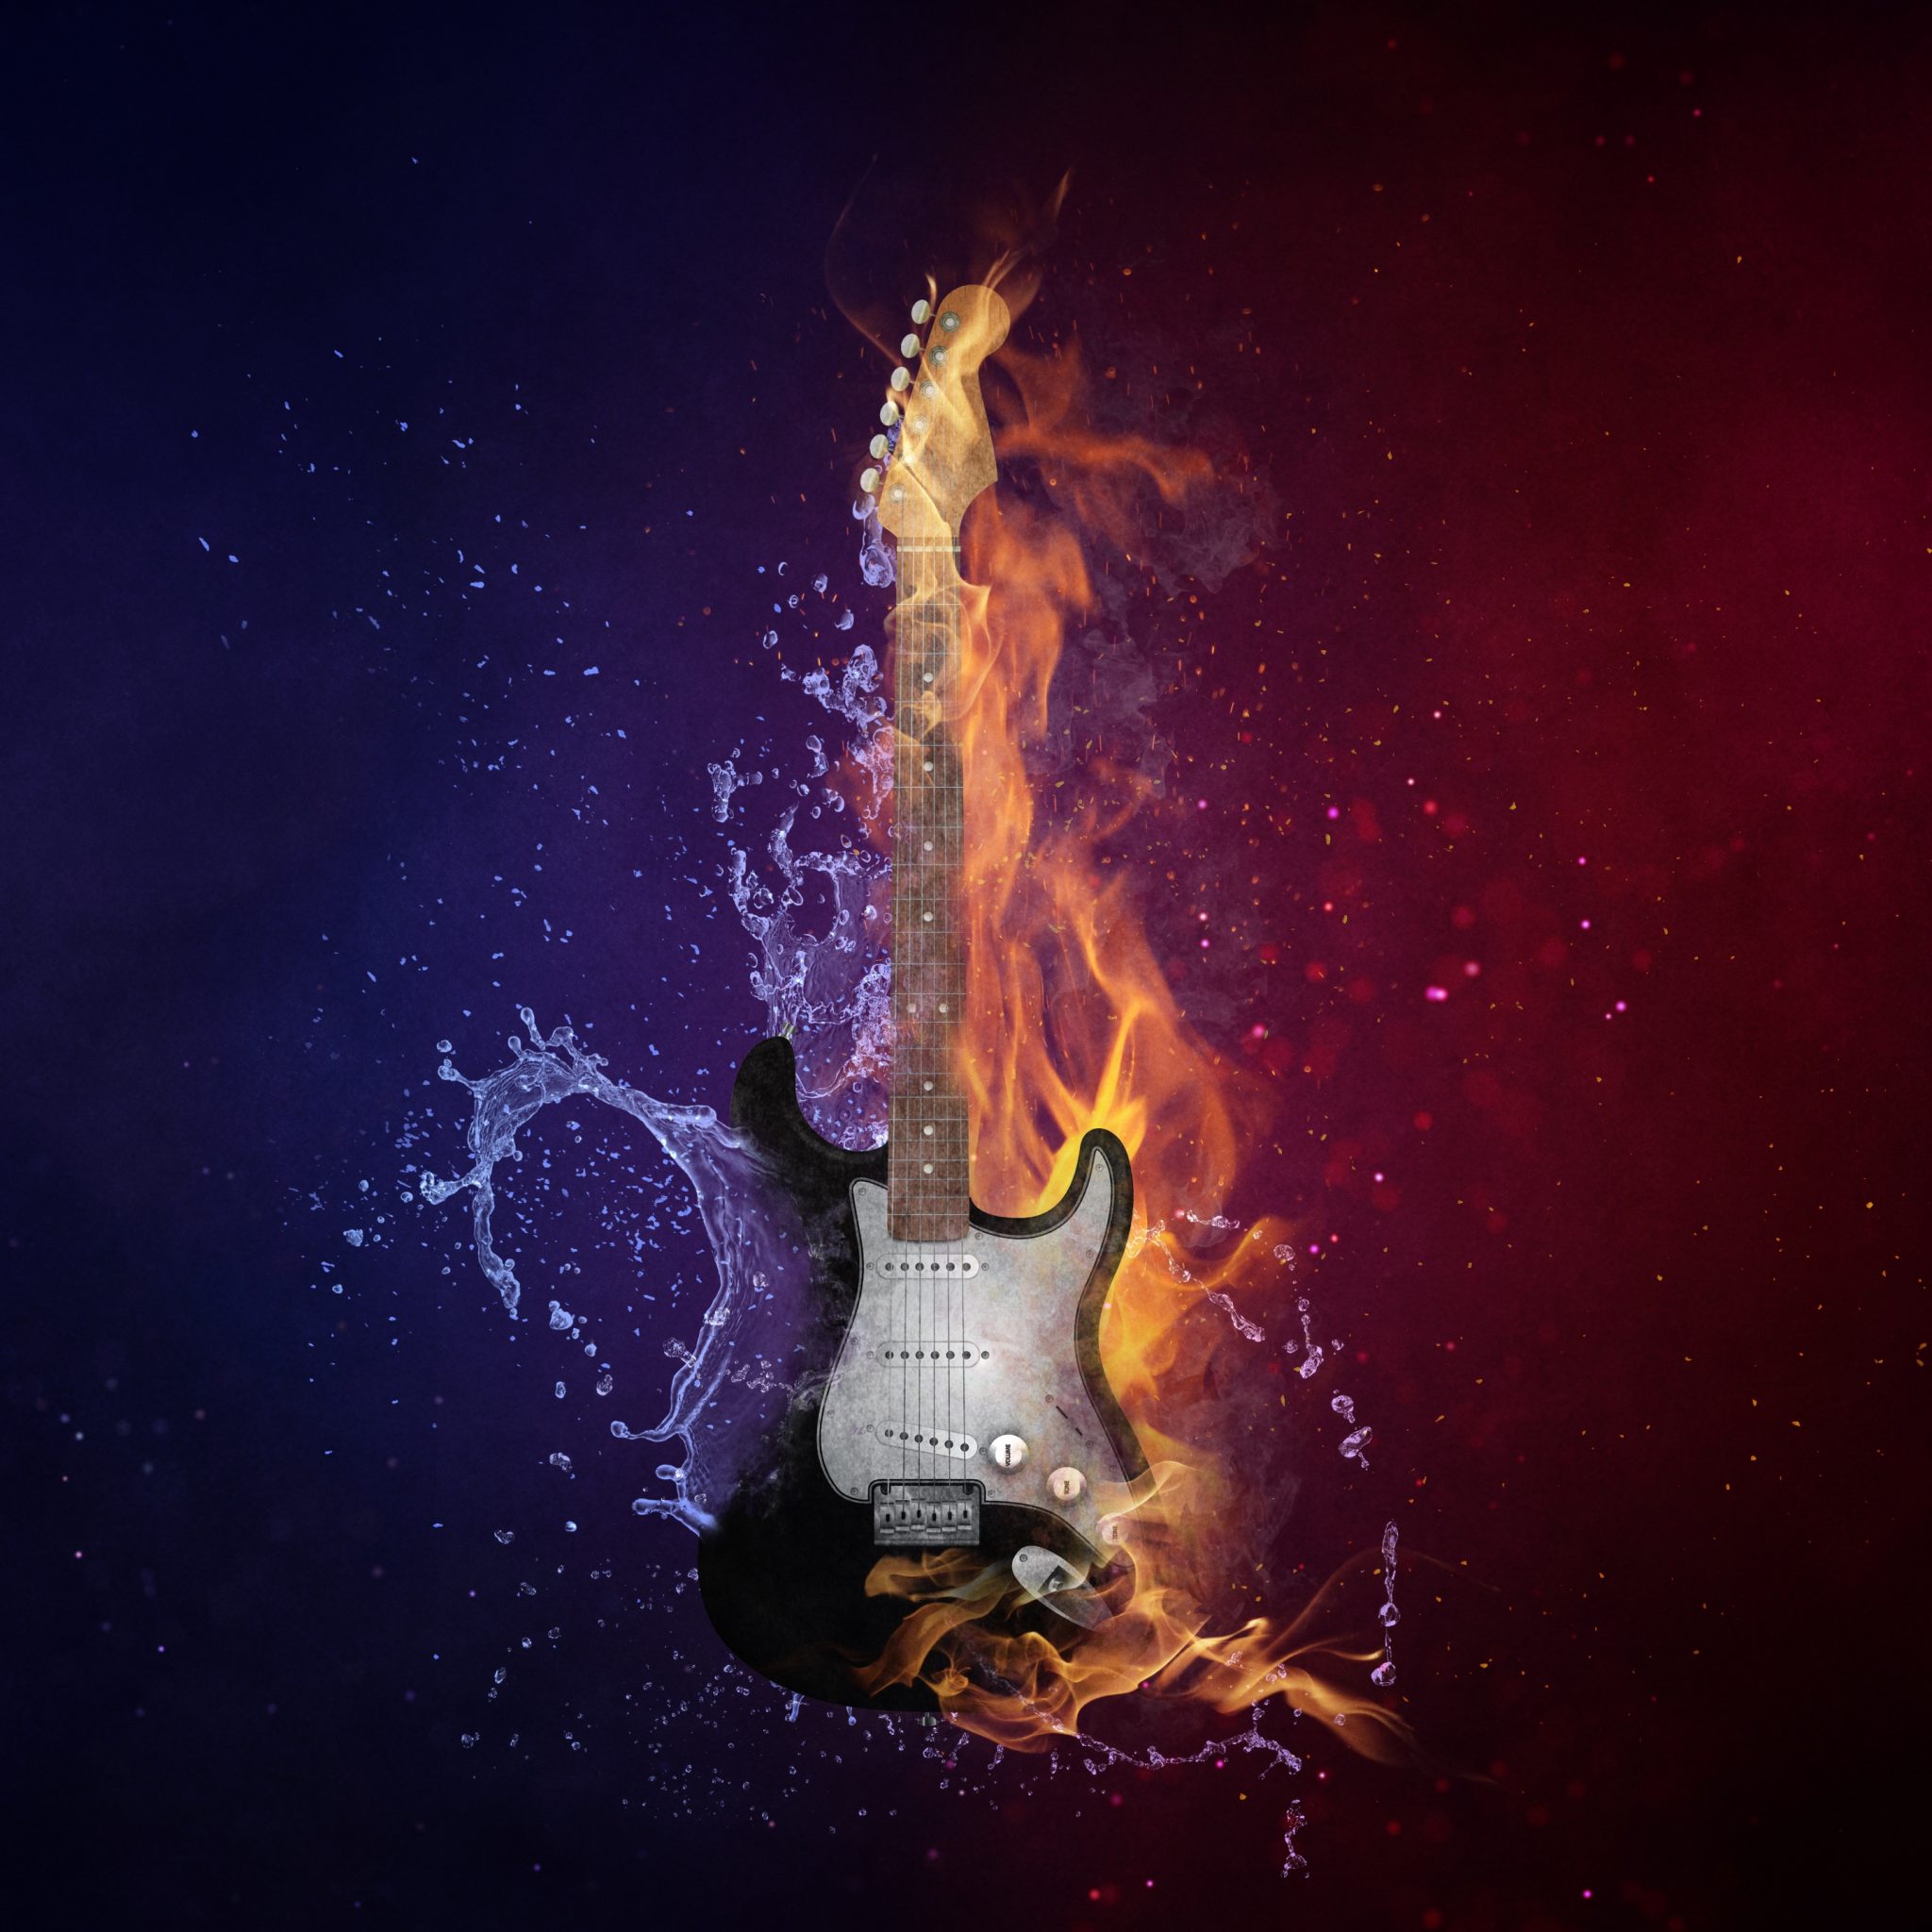 Electric guitar in flame 5K UHD Wallpaper Electric Guitar Wallpapers